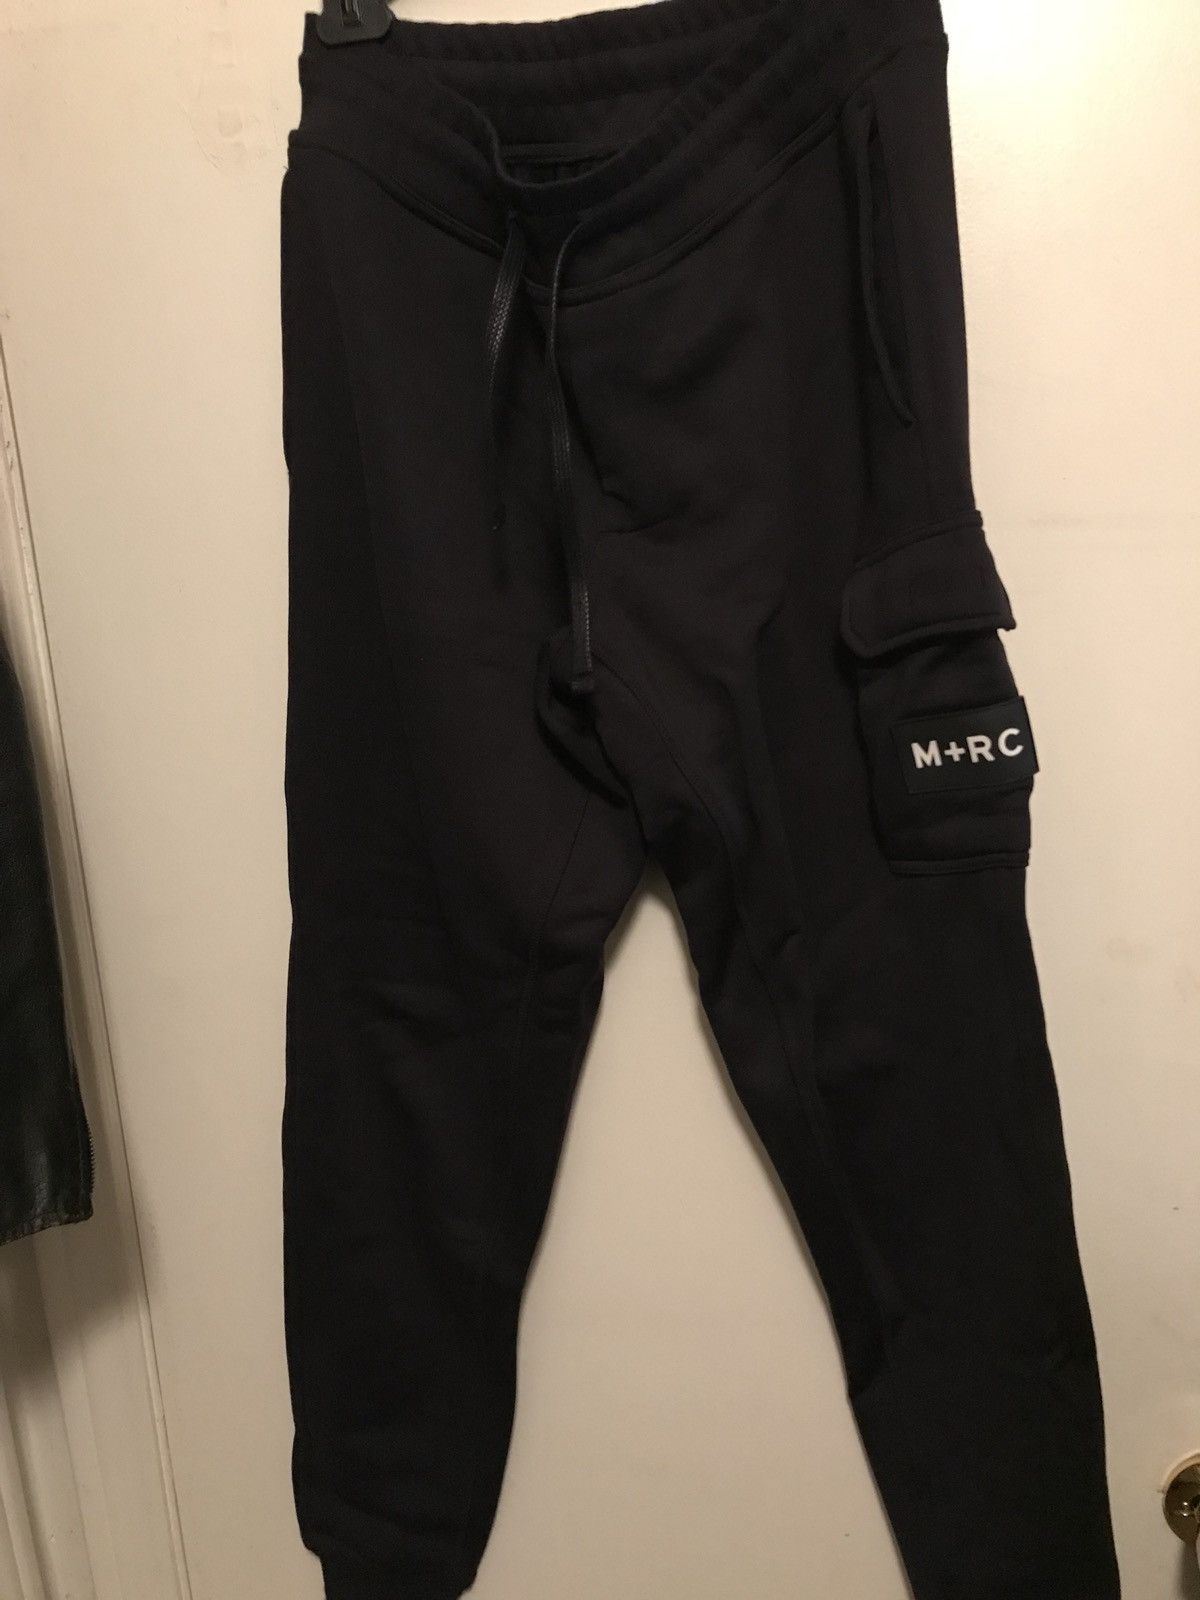 M+Rc Noir M+rc noir track pants mrc noir | Grailed